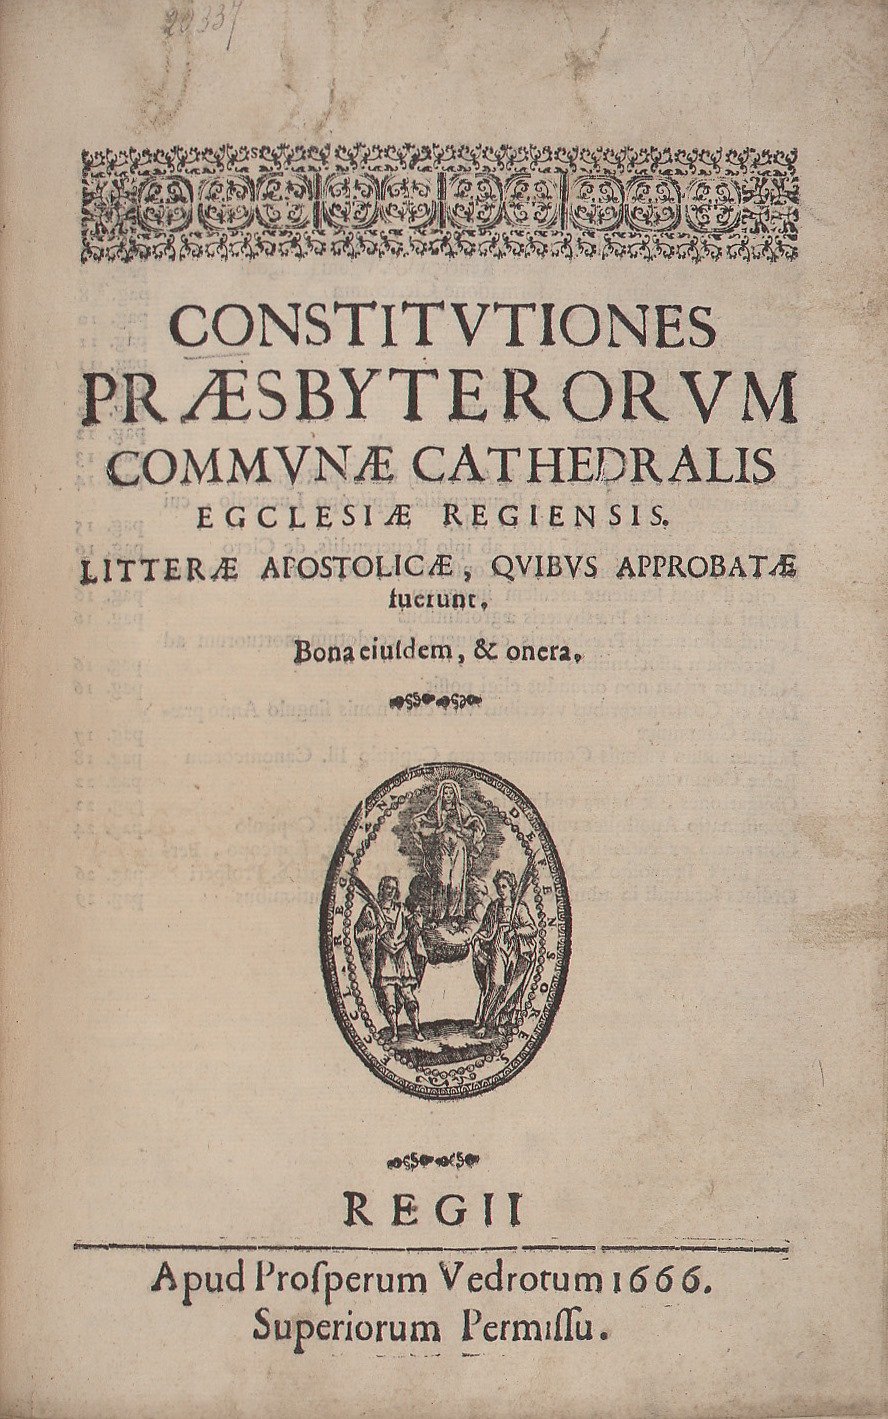 Constitutiones praesbyterorum communae cathedralis egclesiae [sic] Regiensis 